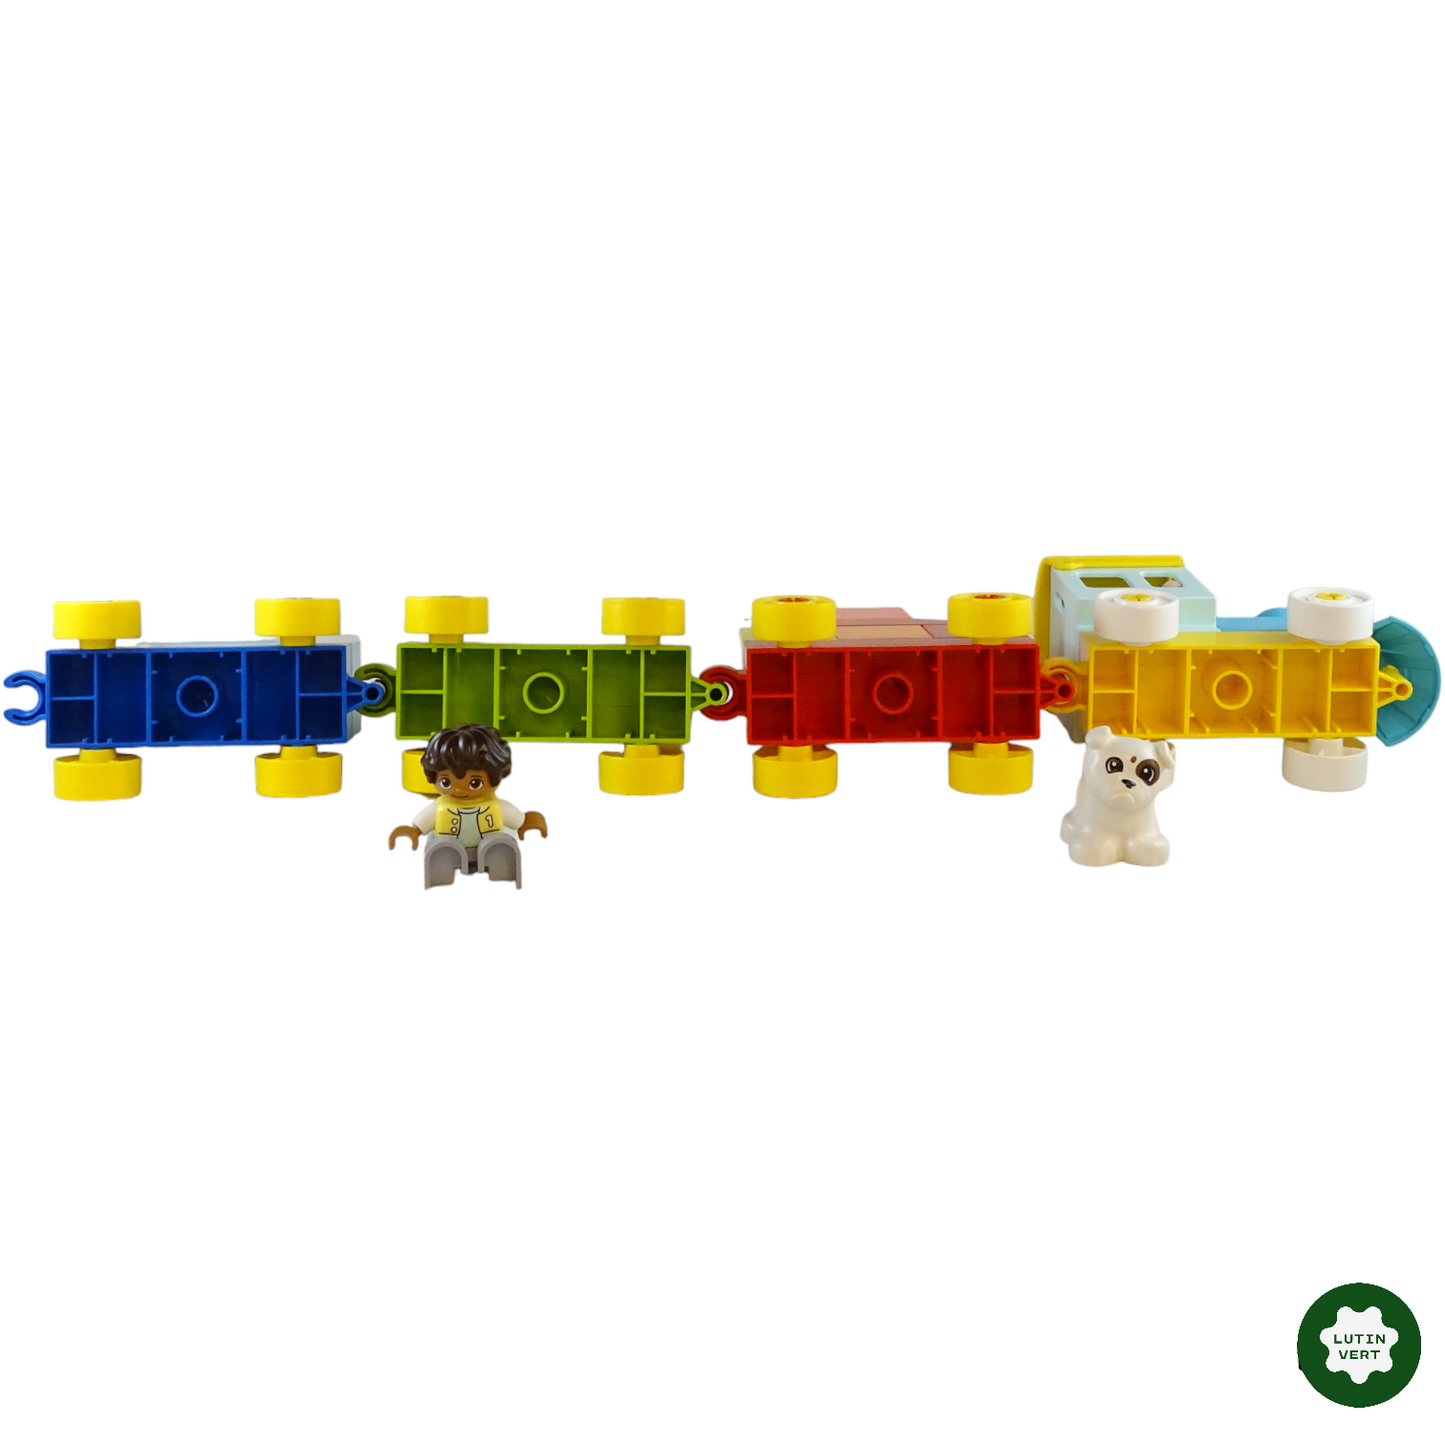 Train des chiffres d'occasion LEGO - Dès 3 ans | Lutin Vert